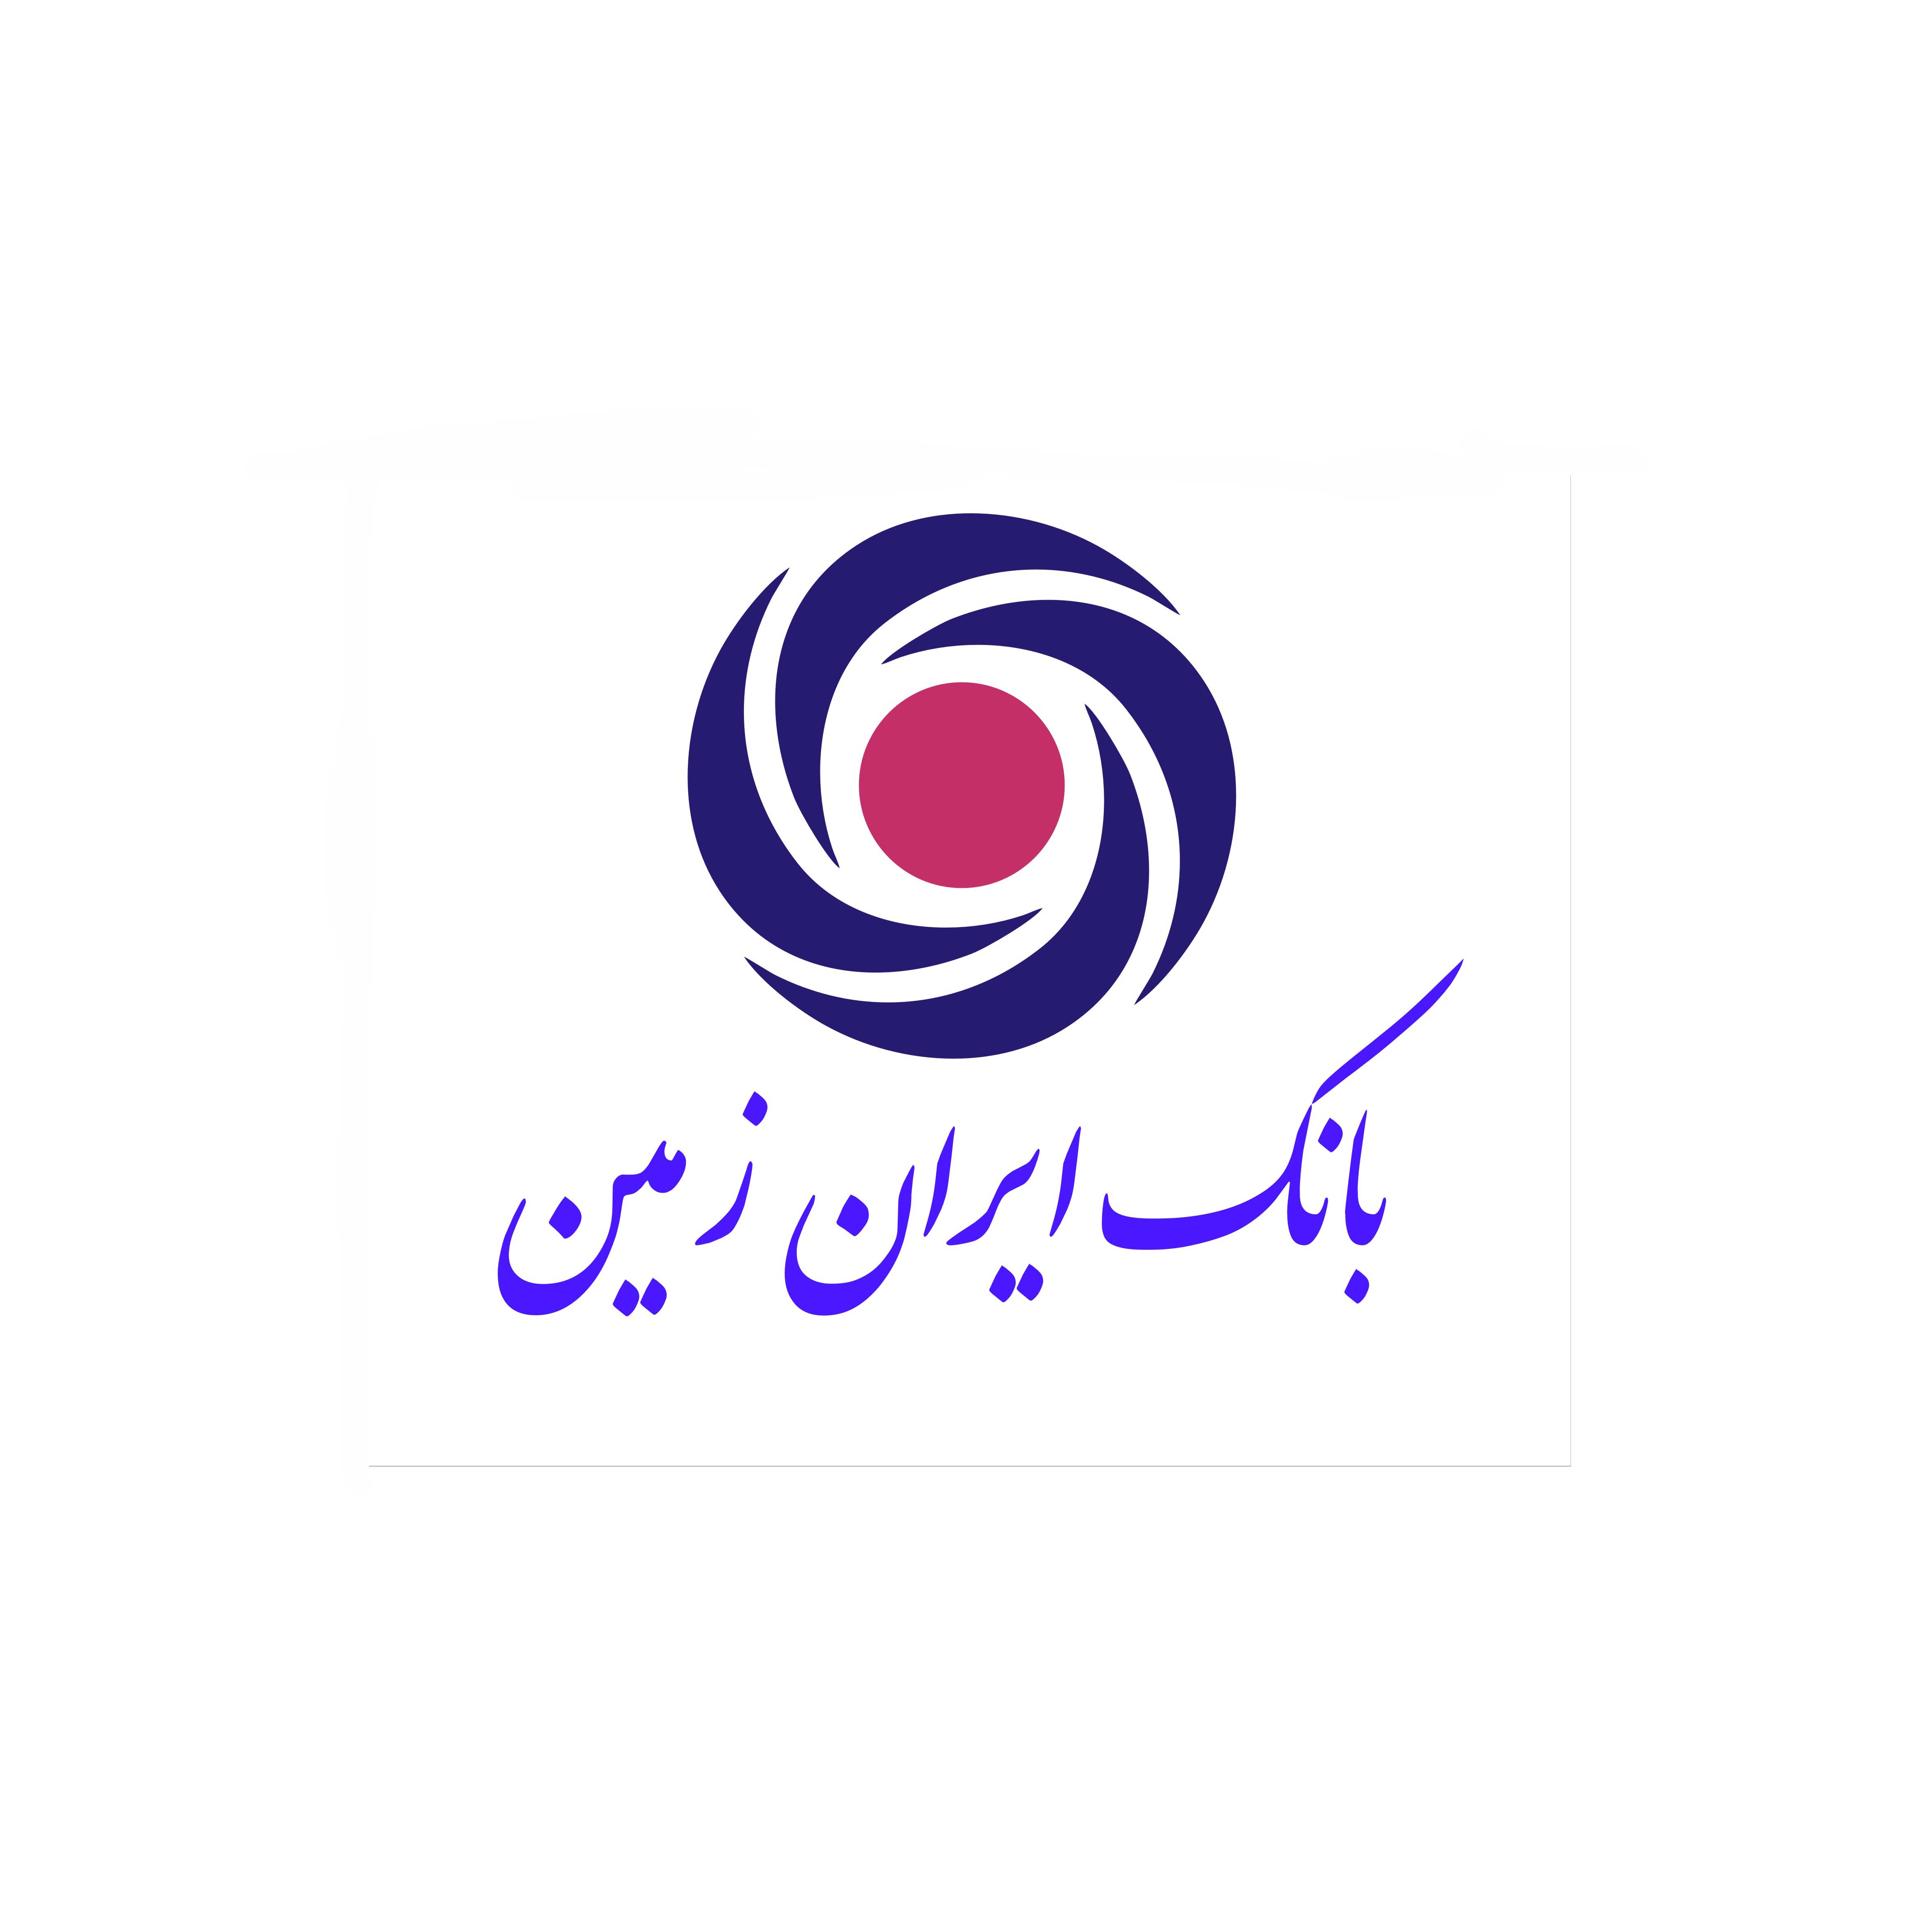 راه‌اندازی سرویس رمز اول و دوم یکبار مصرف کارت در بانک ایران زمین